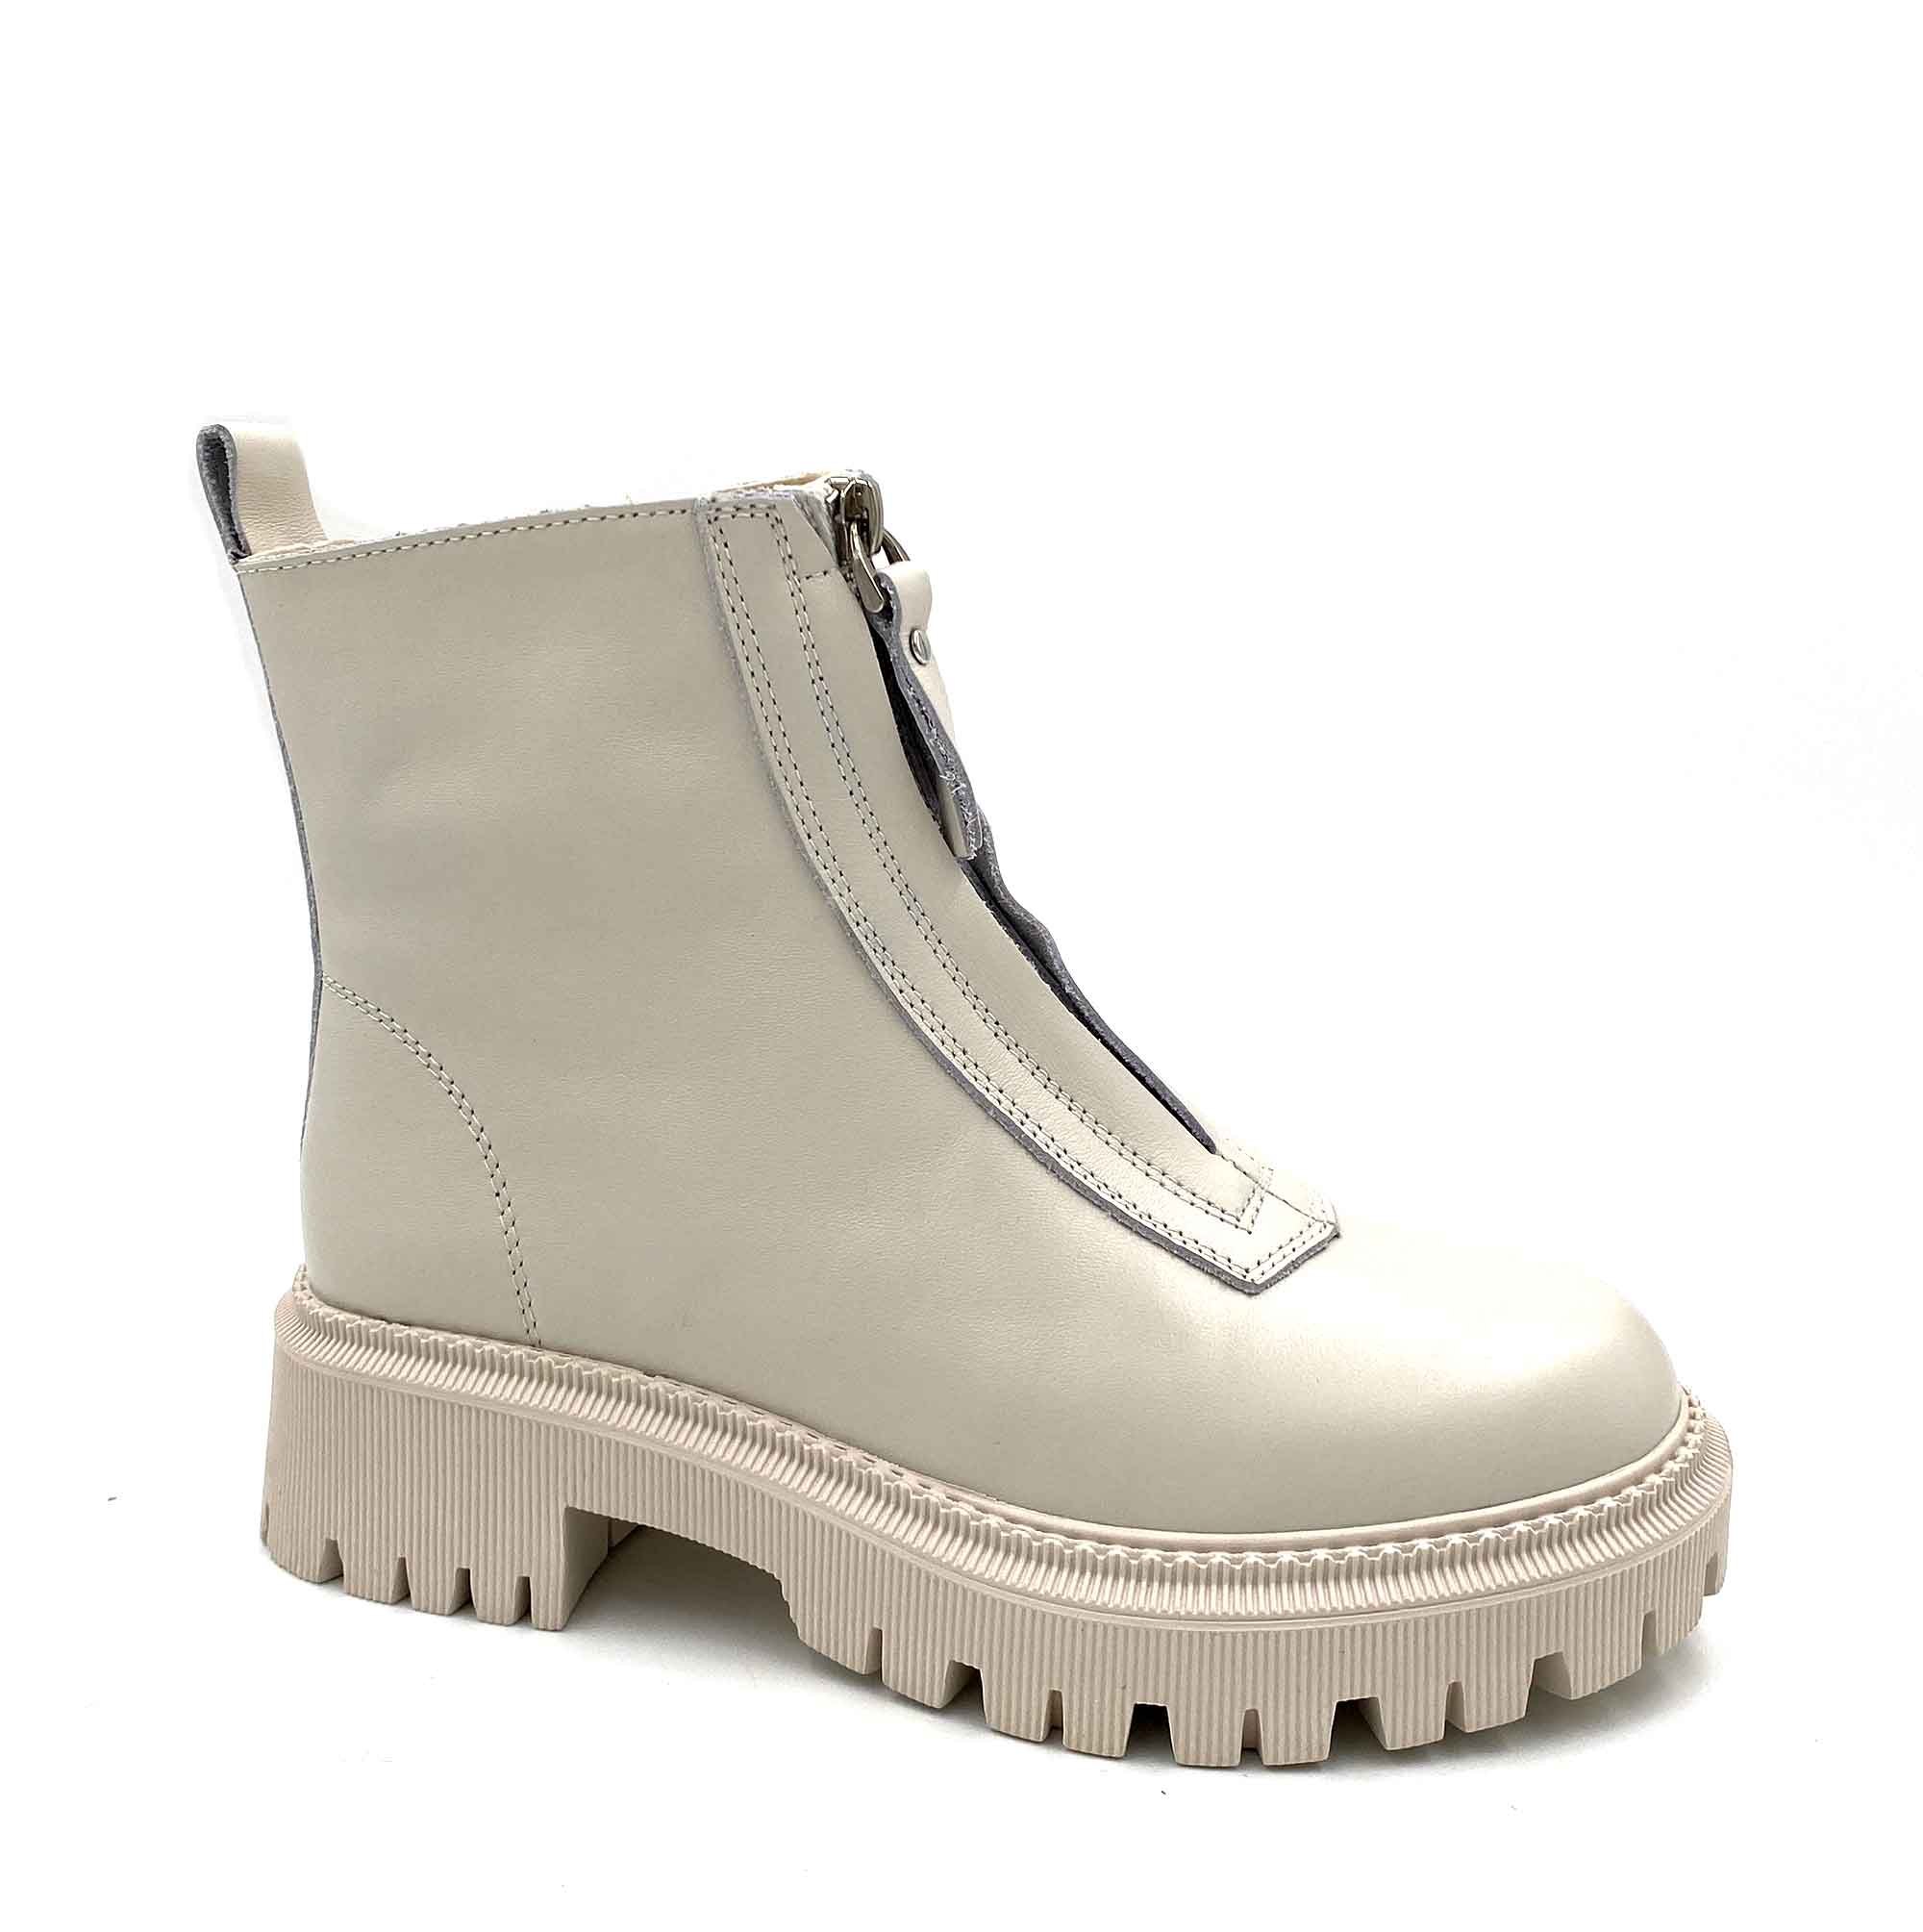 Ботинки зимние женские Rio Fiore - 30848 купить в интернет-магазине с доставкой по России